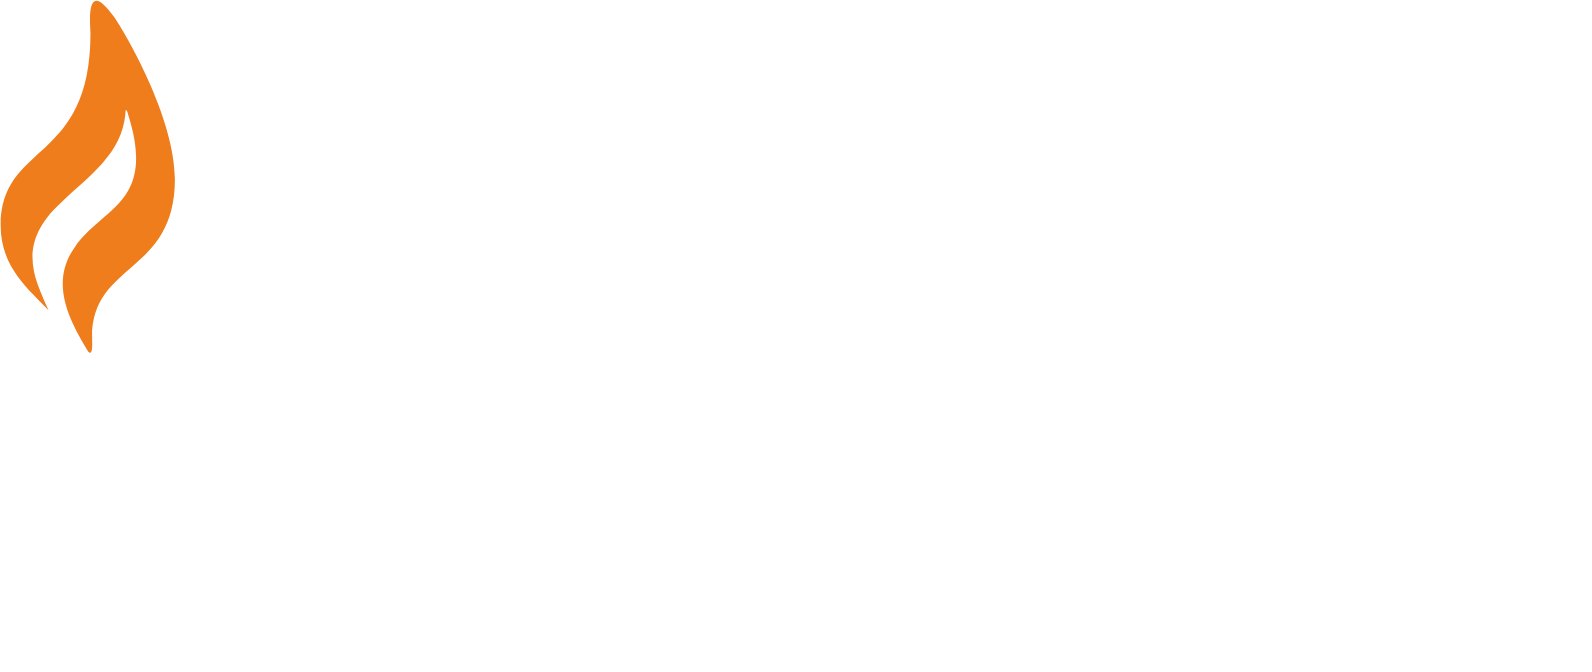 Ringkjøbing Landbobank logo large for dark backgrounds (transparent PNG)